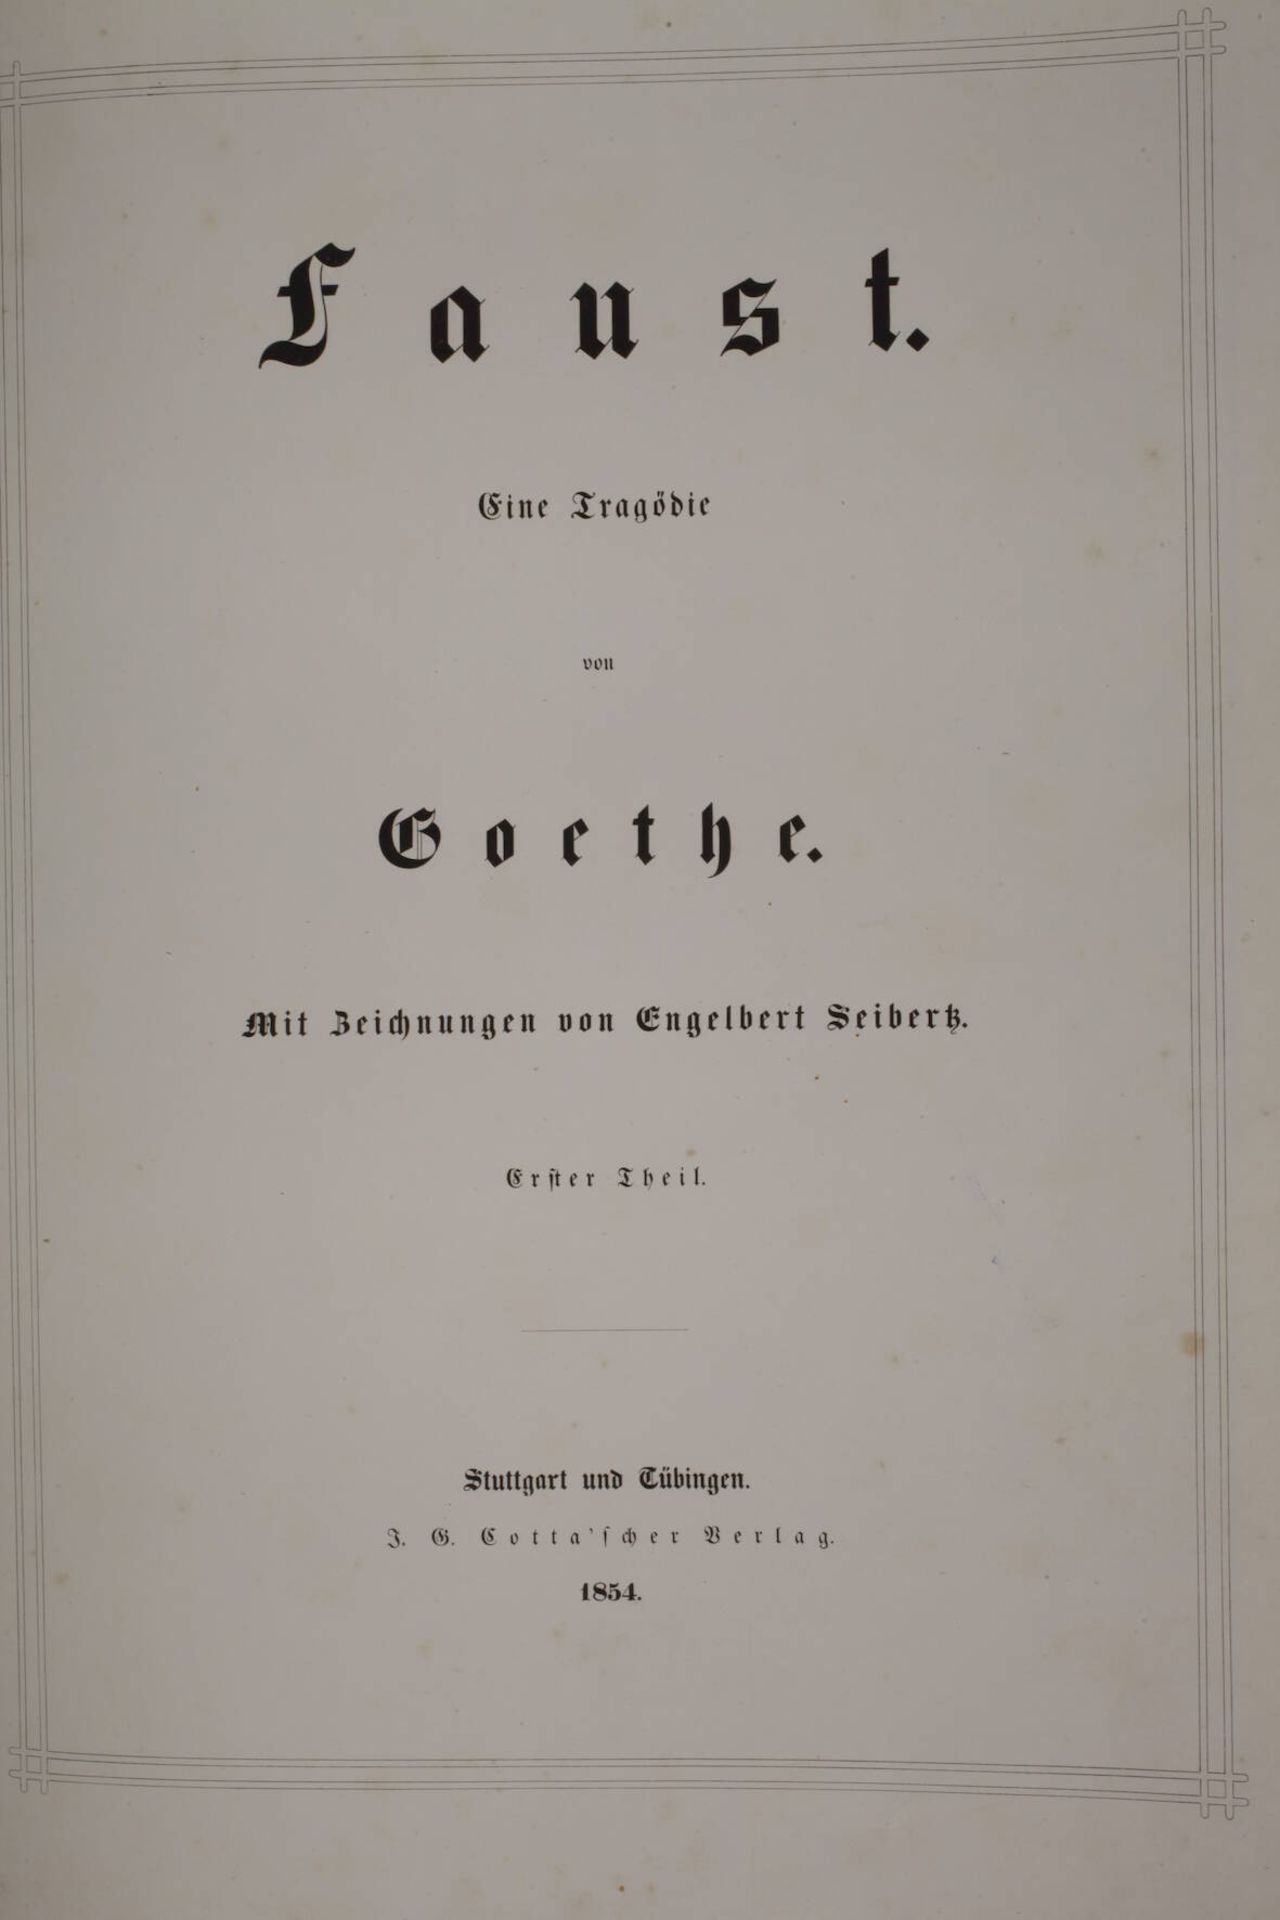 Faust - Eine Tragödie von Goethe mit Zeichnungen von Engelbert Seibertz, 1. und 2. Teil, bei Cotta - Image 2 of 4